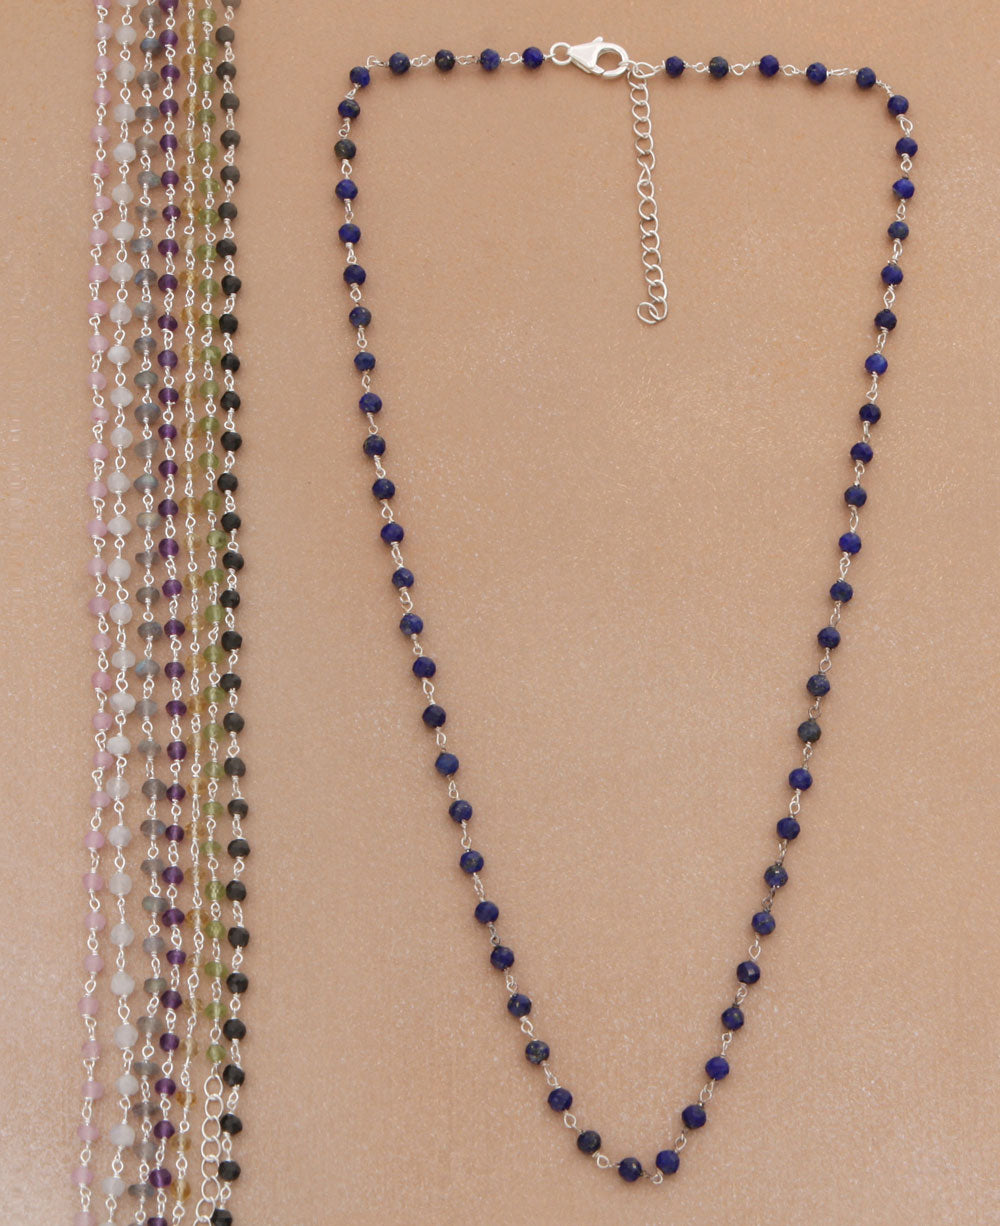 Gemstone Necklace Chain